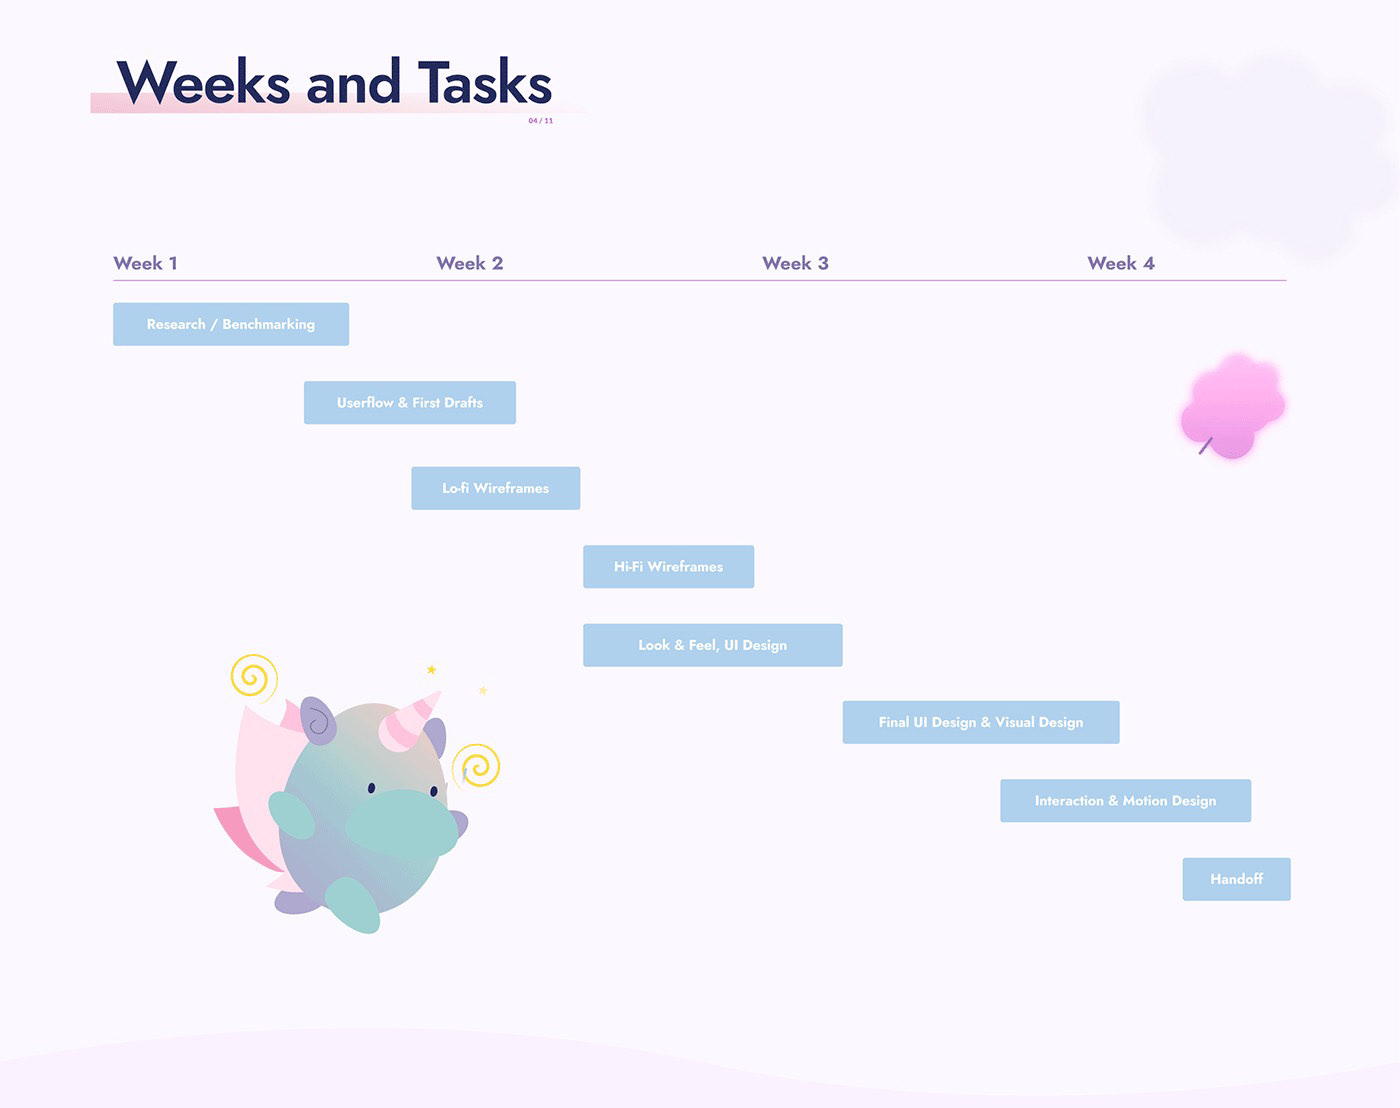 Weeks and tasks